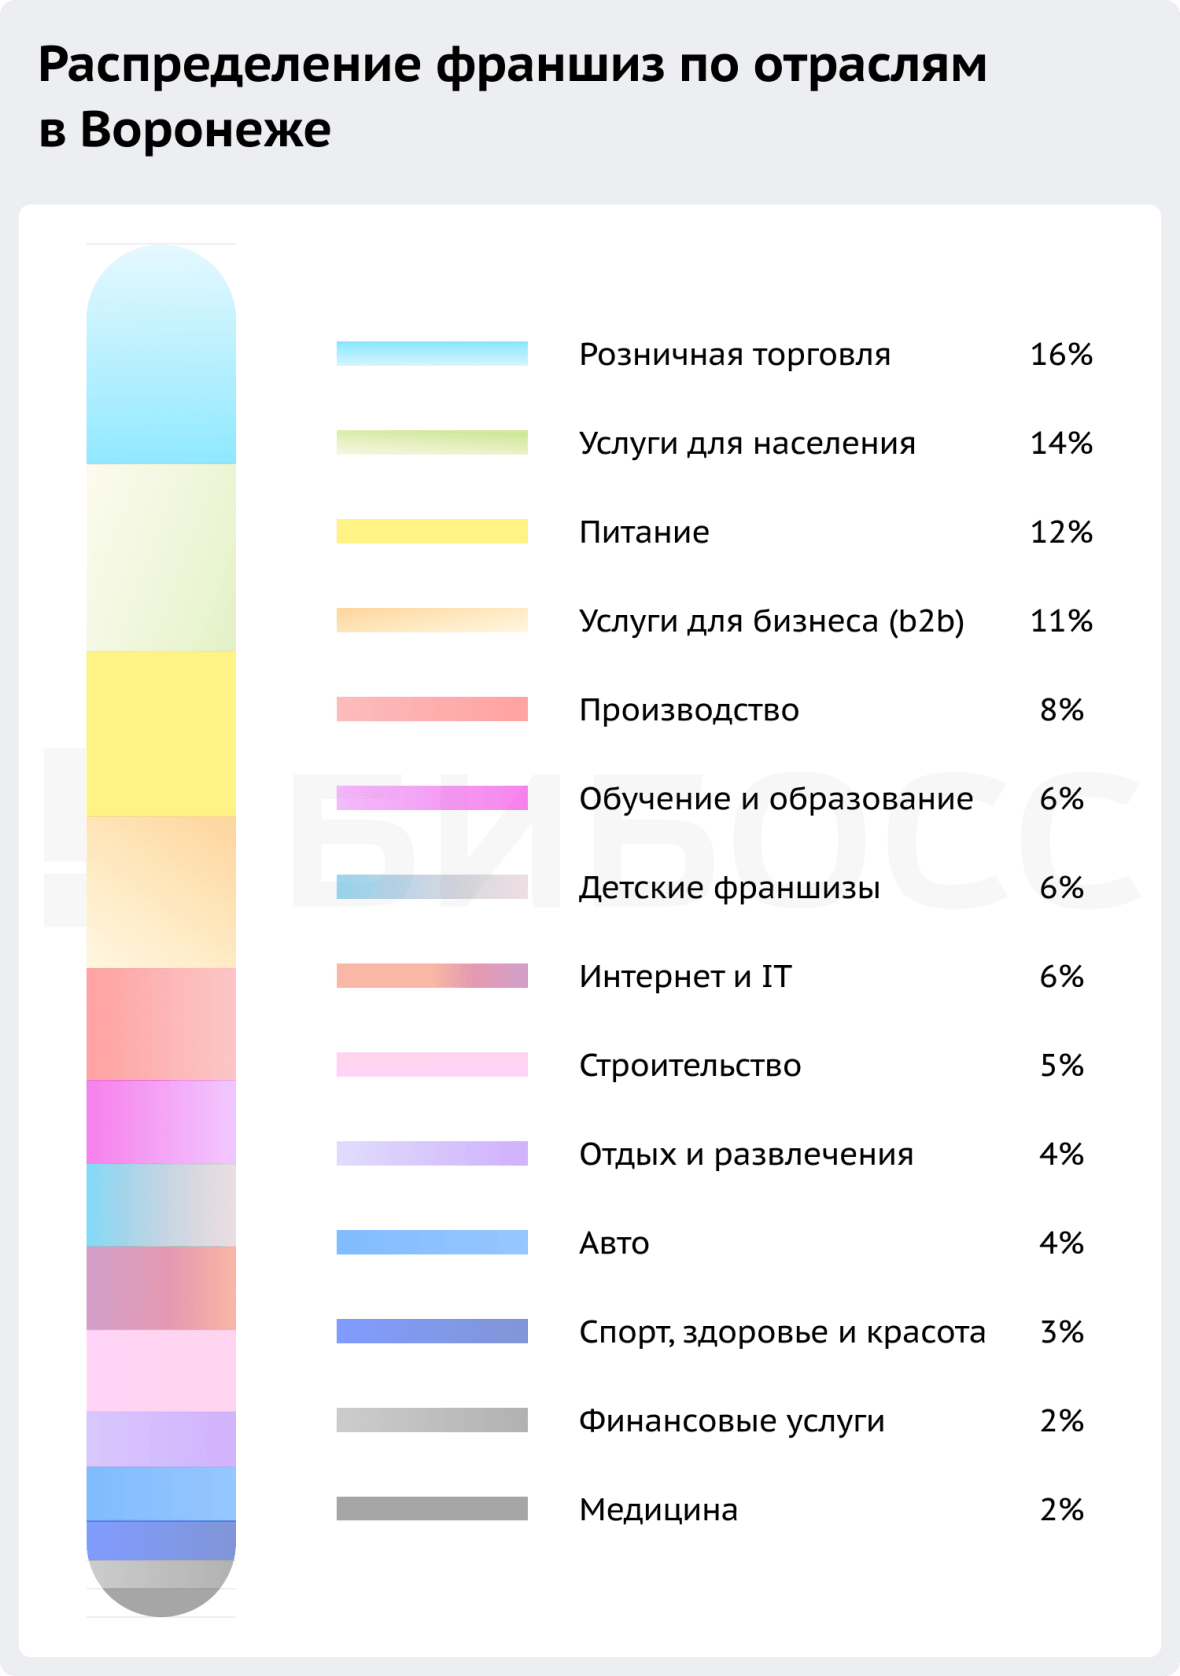 Распределение франшиз по отраслям в Воронеже